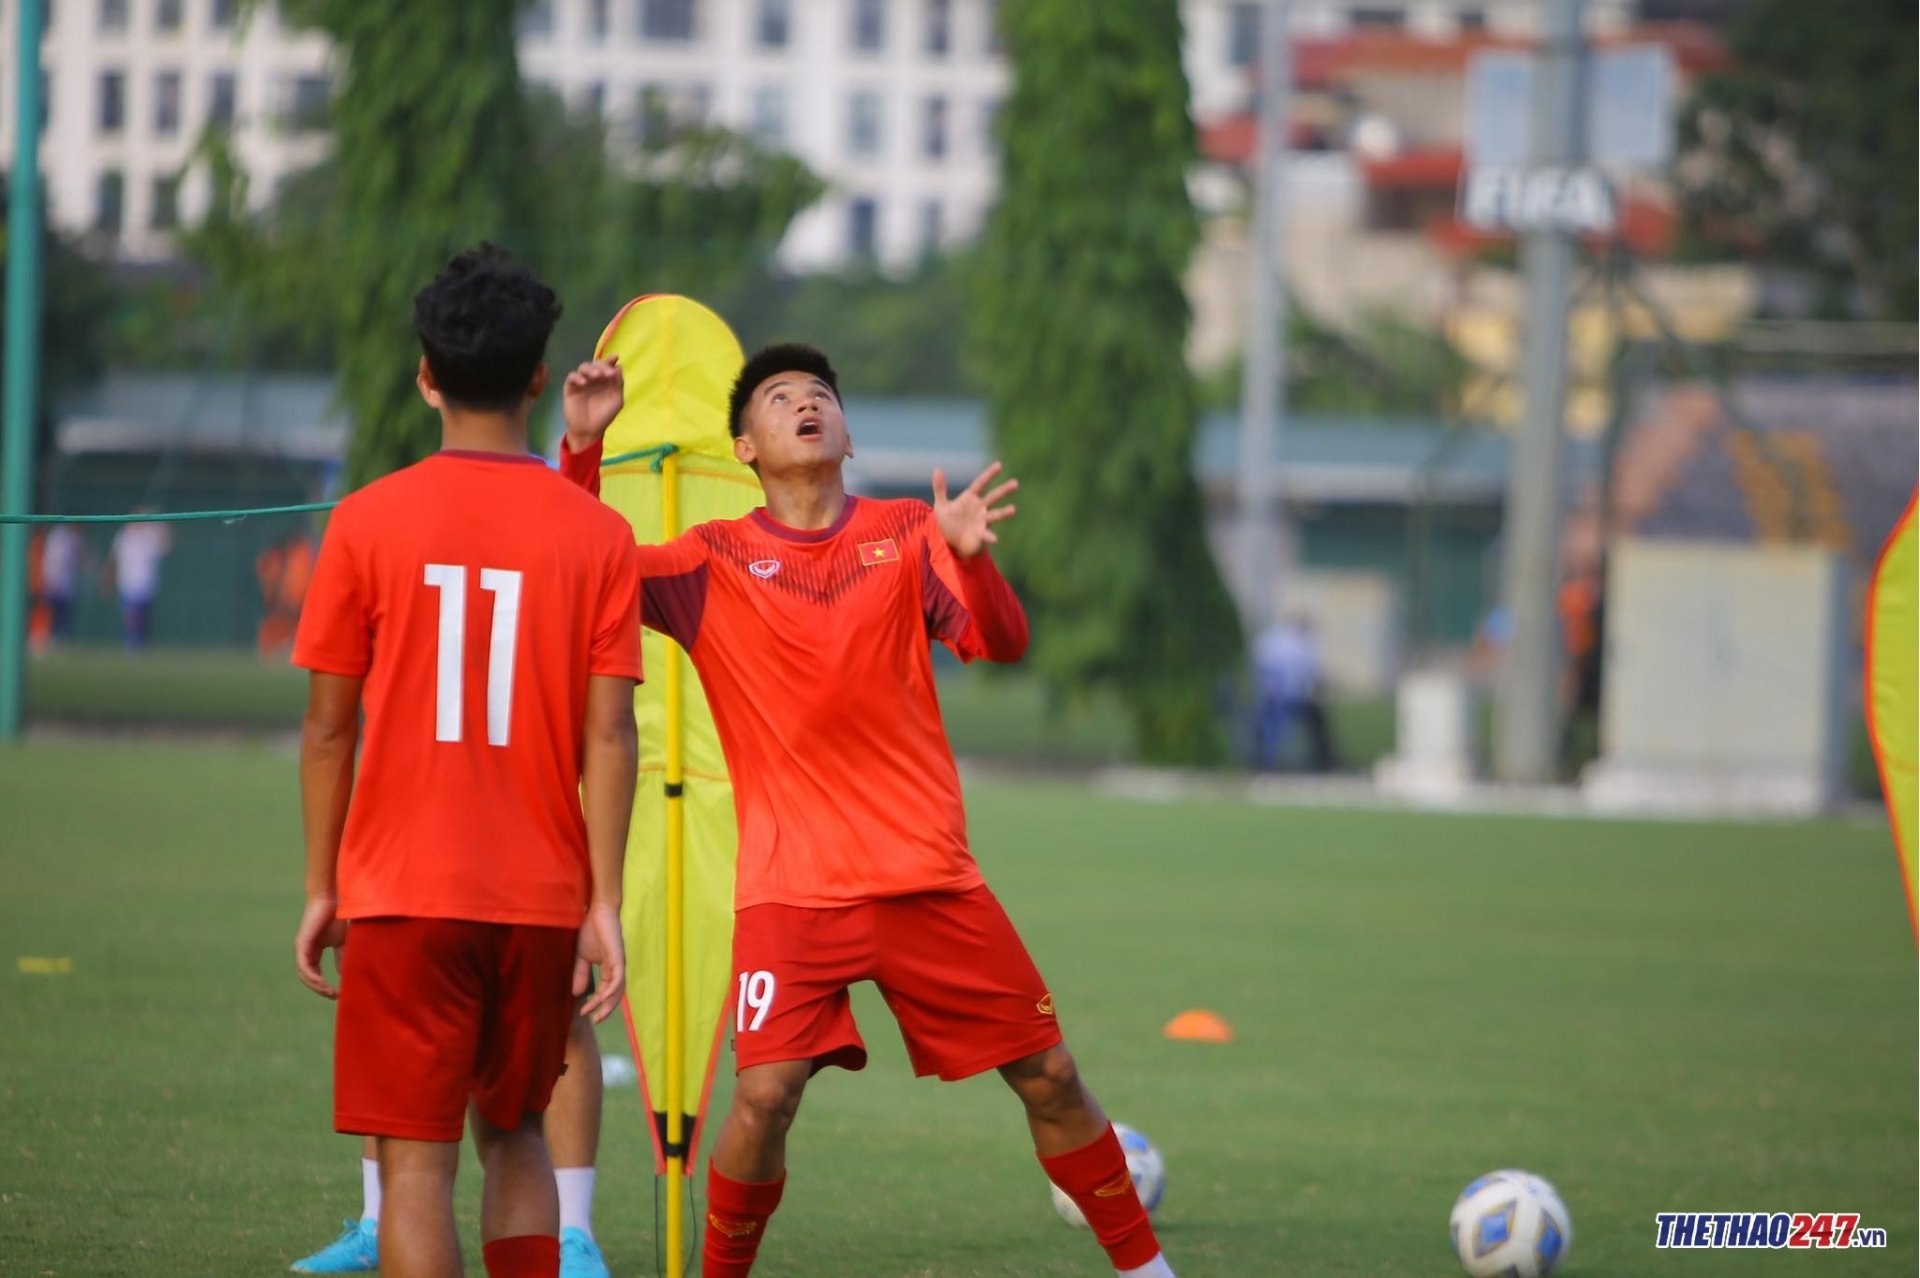 HLV Gong Oh Kyun bất ngờ 'soi giò' U20 Việt Nam trước giải châu Á - Ảnh 4.